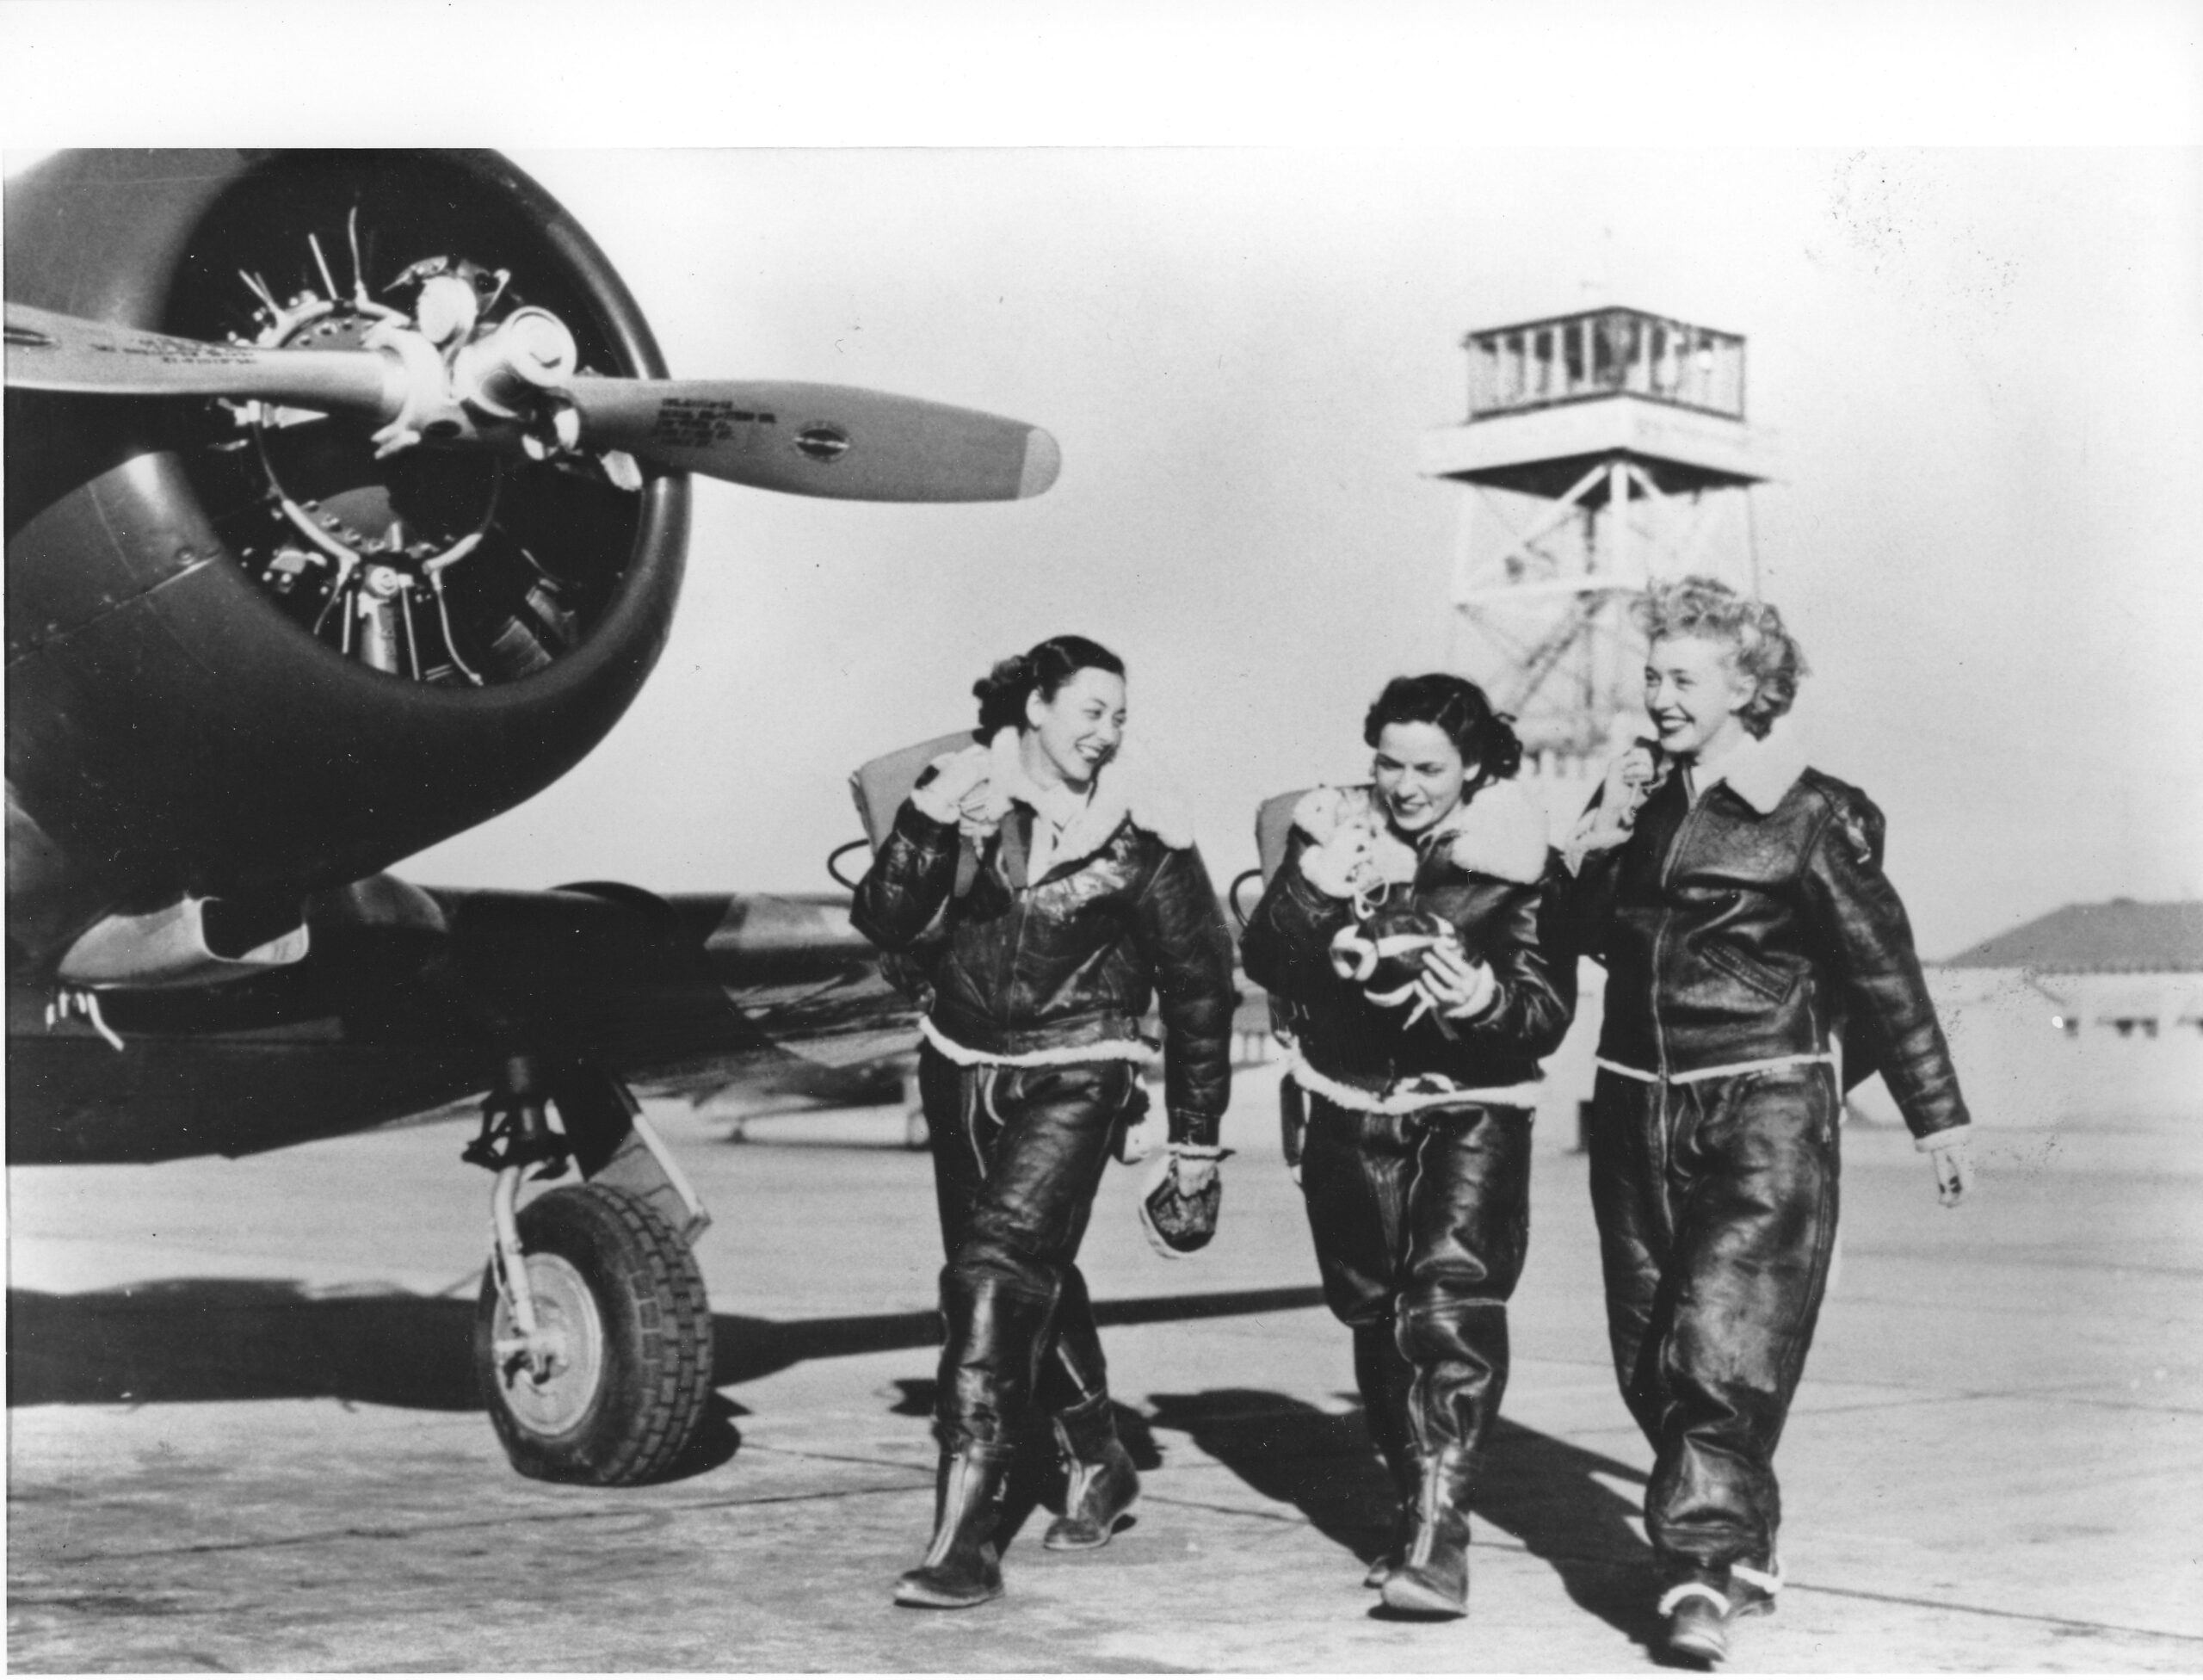 Three women in 1940s airforce attire walk past a plane.